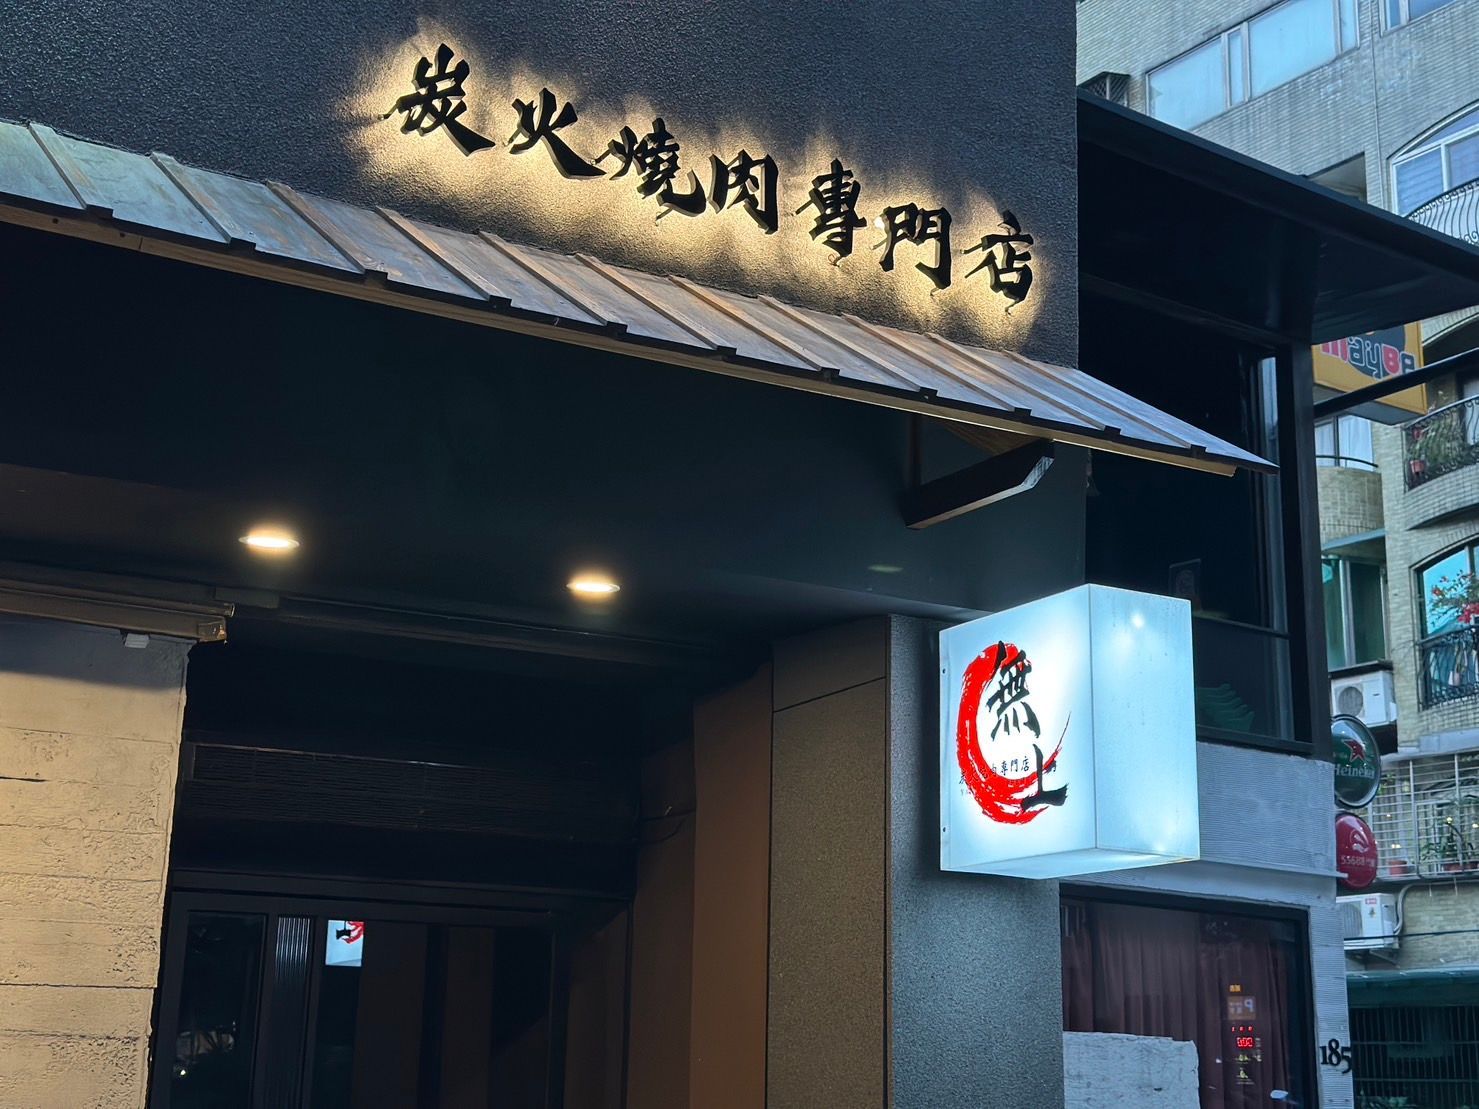 【台北】東區燒肉｜無上炭火燒肉專門店 專人代烤服務超貼心 日